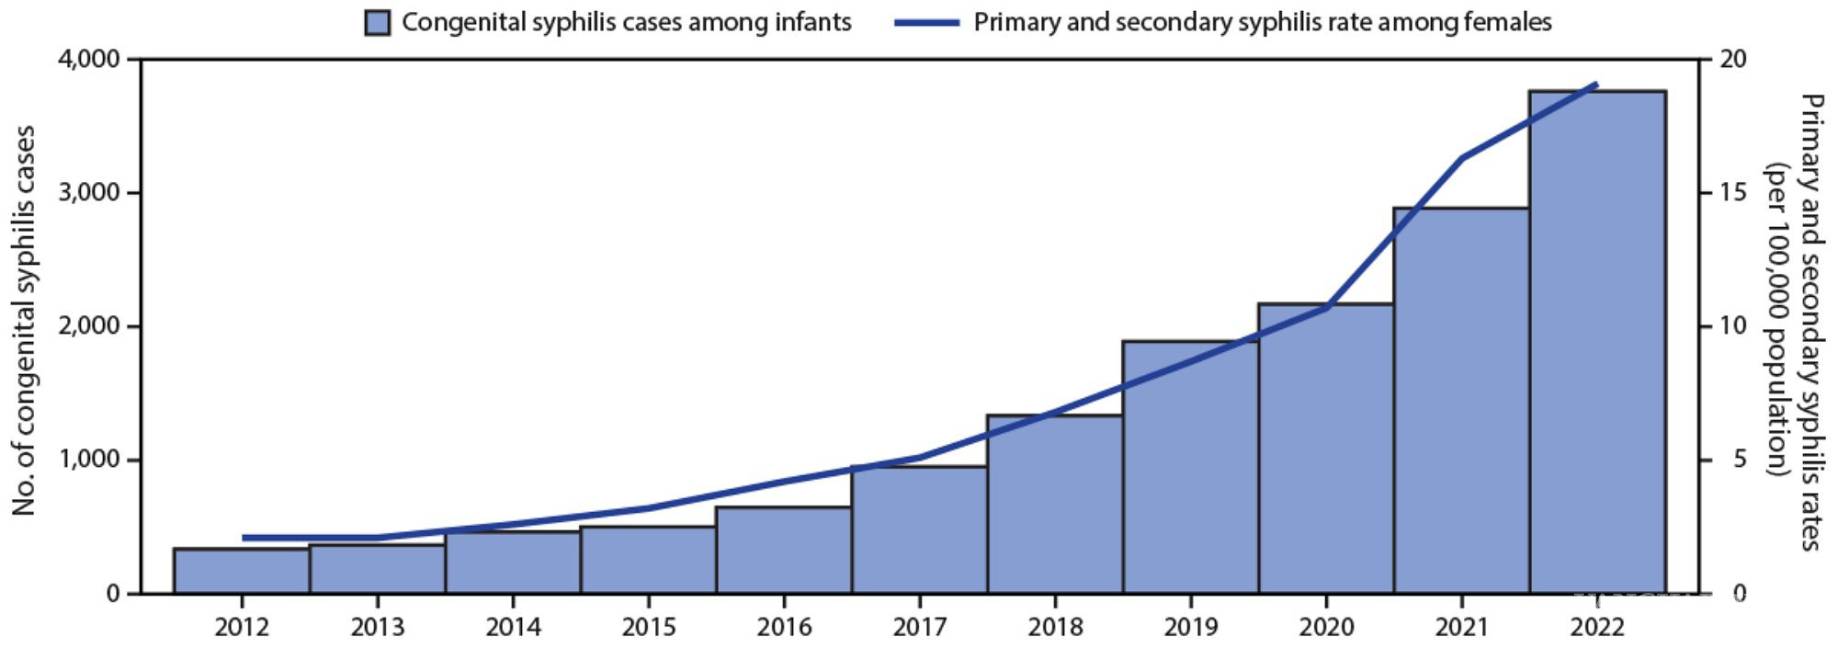 $!Número notificado de casos de sífilis congénita entre lactantes, por año de nacimiento, y tasas de casos notificados de sífilis primaria y secundaria entre mujeres de 15 a 44 años, por año, Estados Unidos, 2012-2022